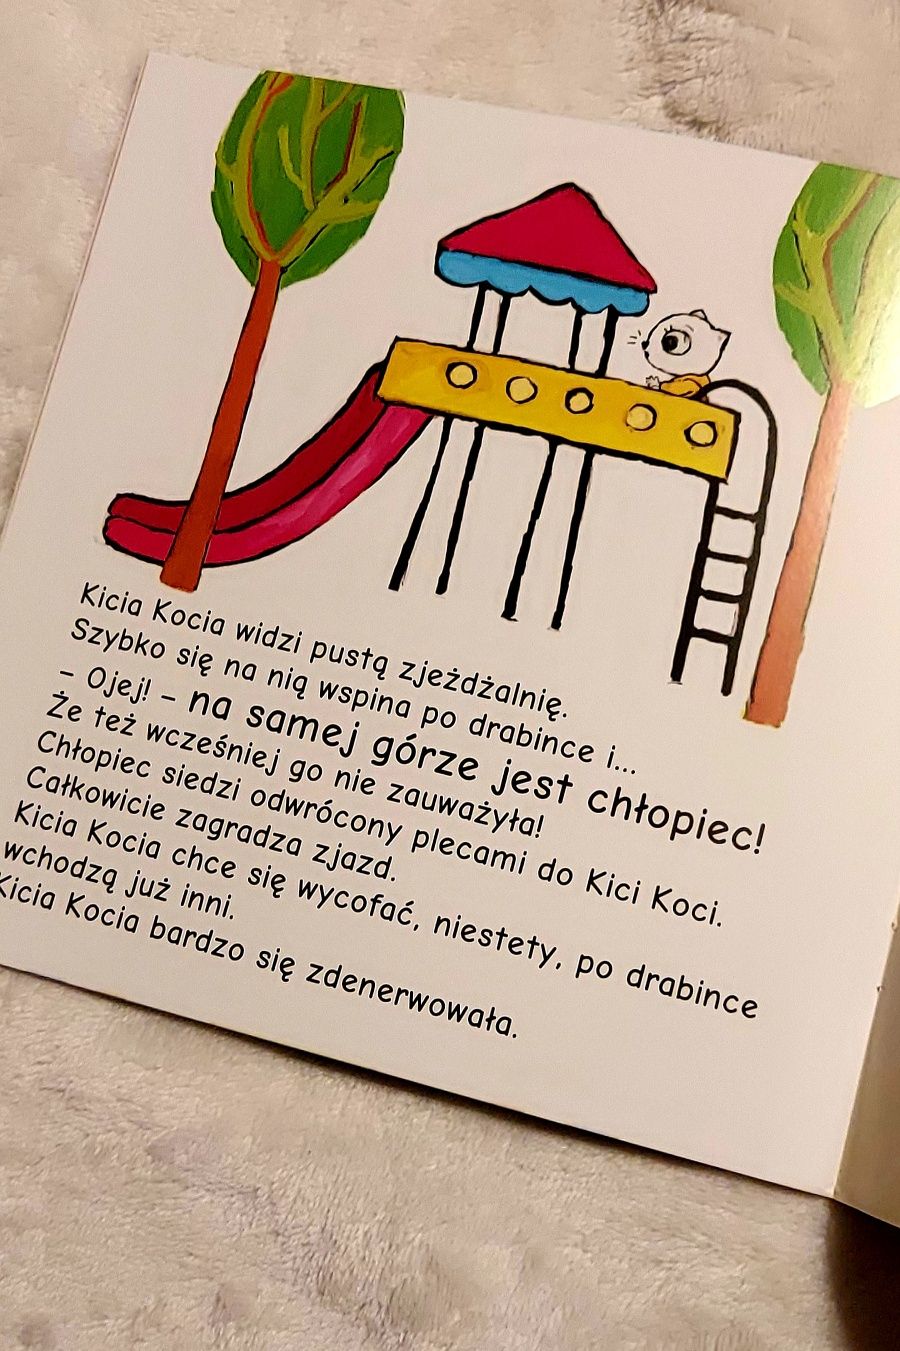 Książeczka Kicia Kocia na placu zabaw książka dla dzieci #KupMiChceTo